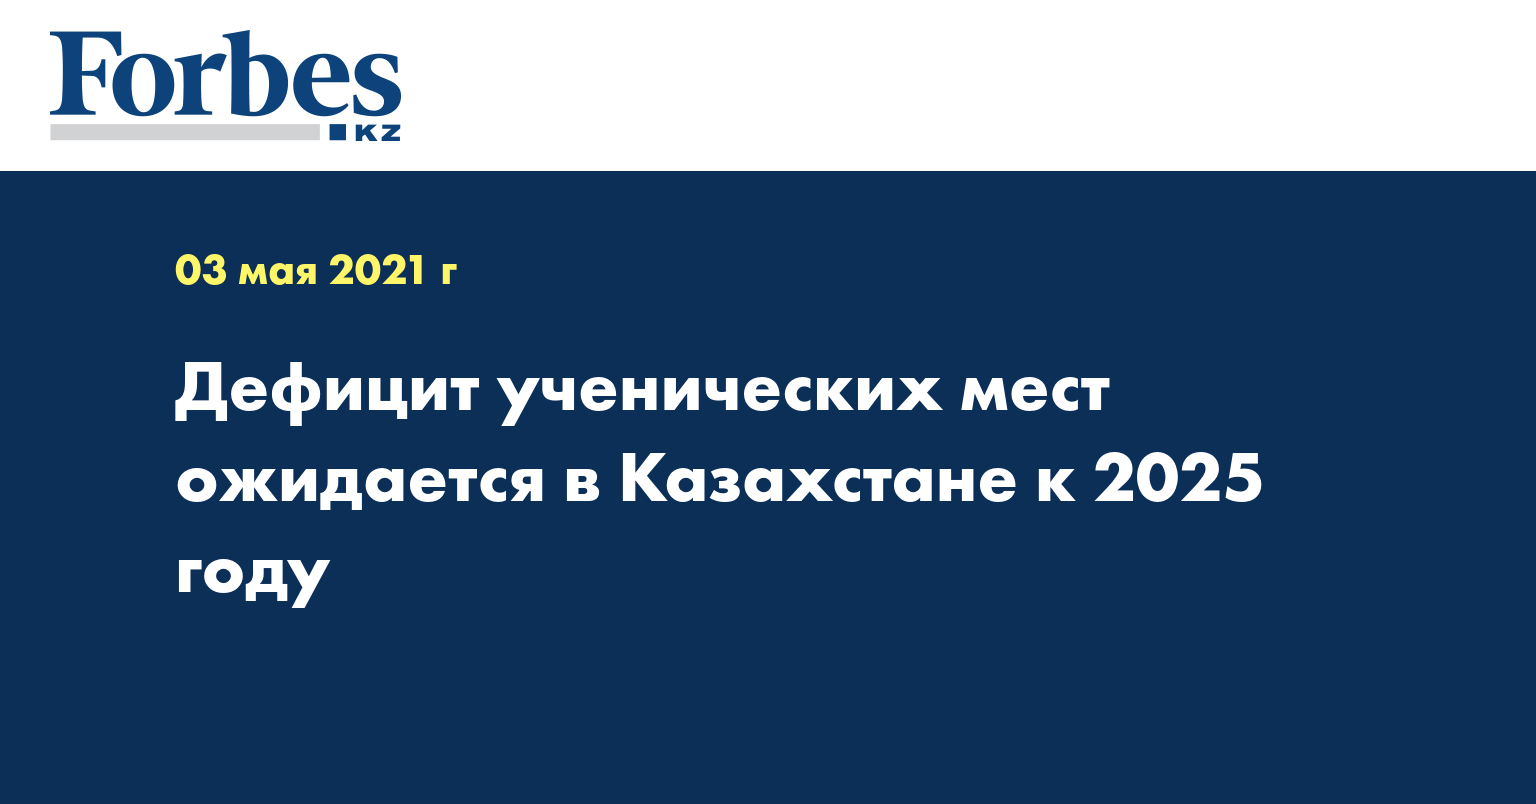 Дефицит ученических мест ожидается в Казахстане к 2025 году